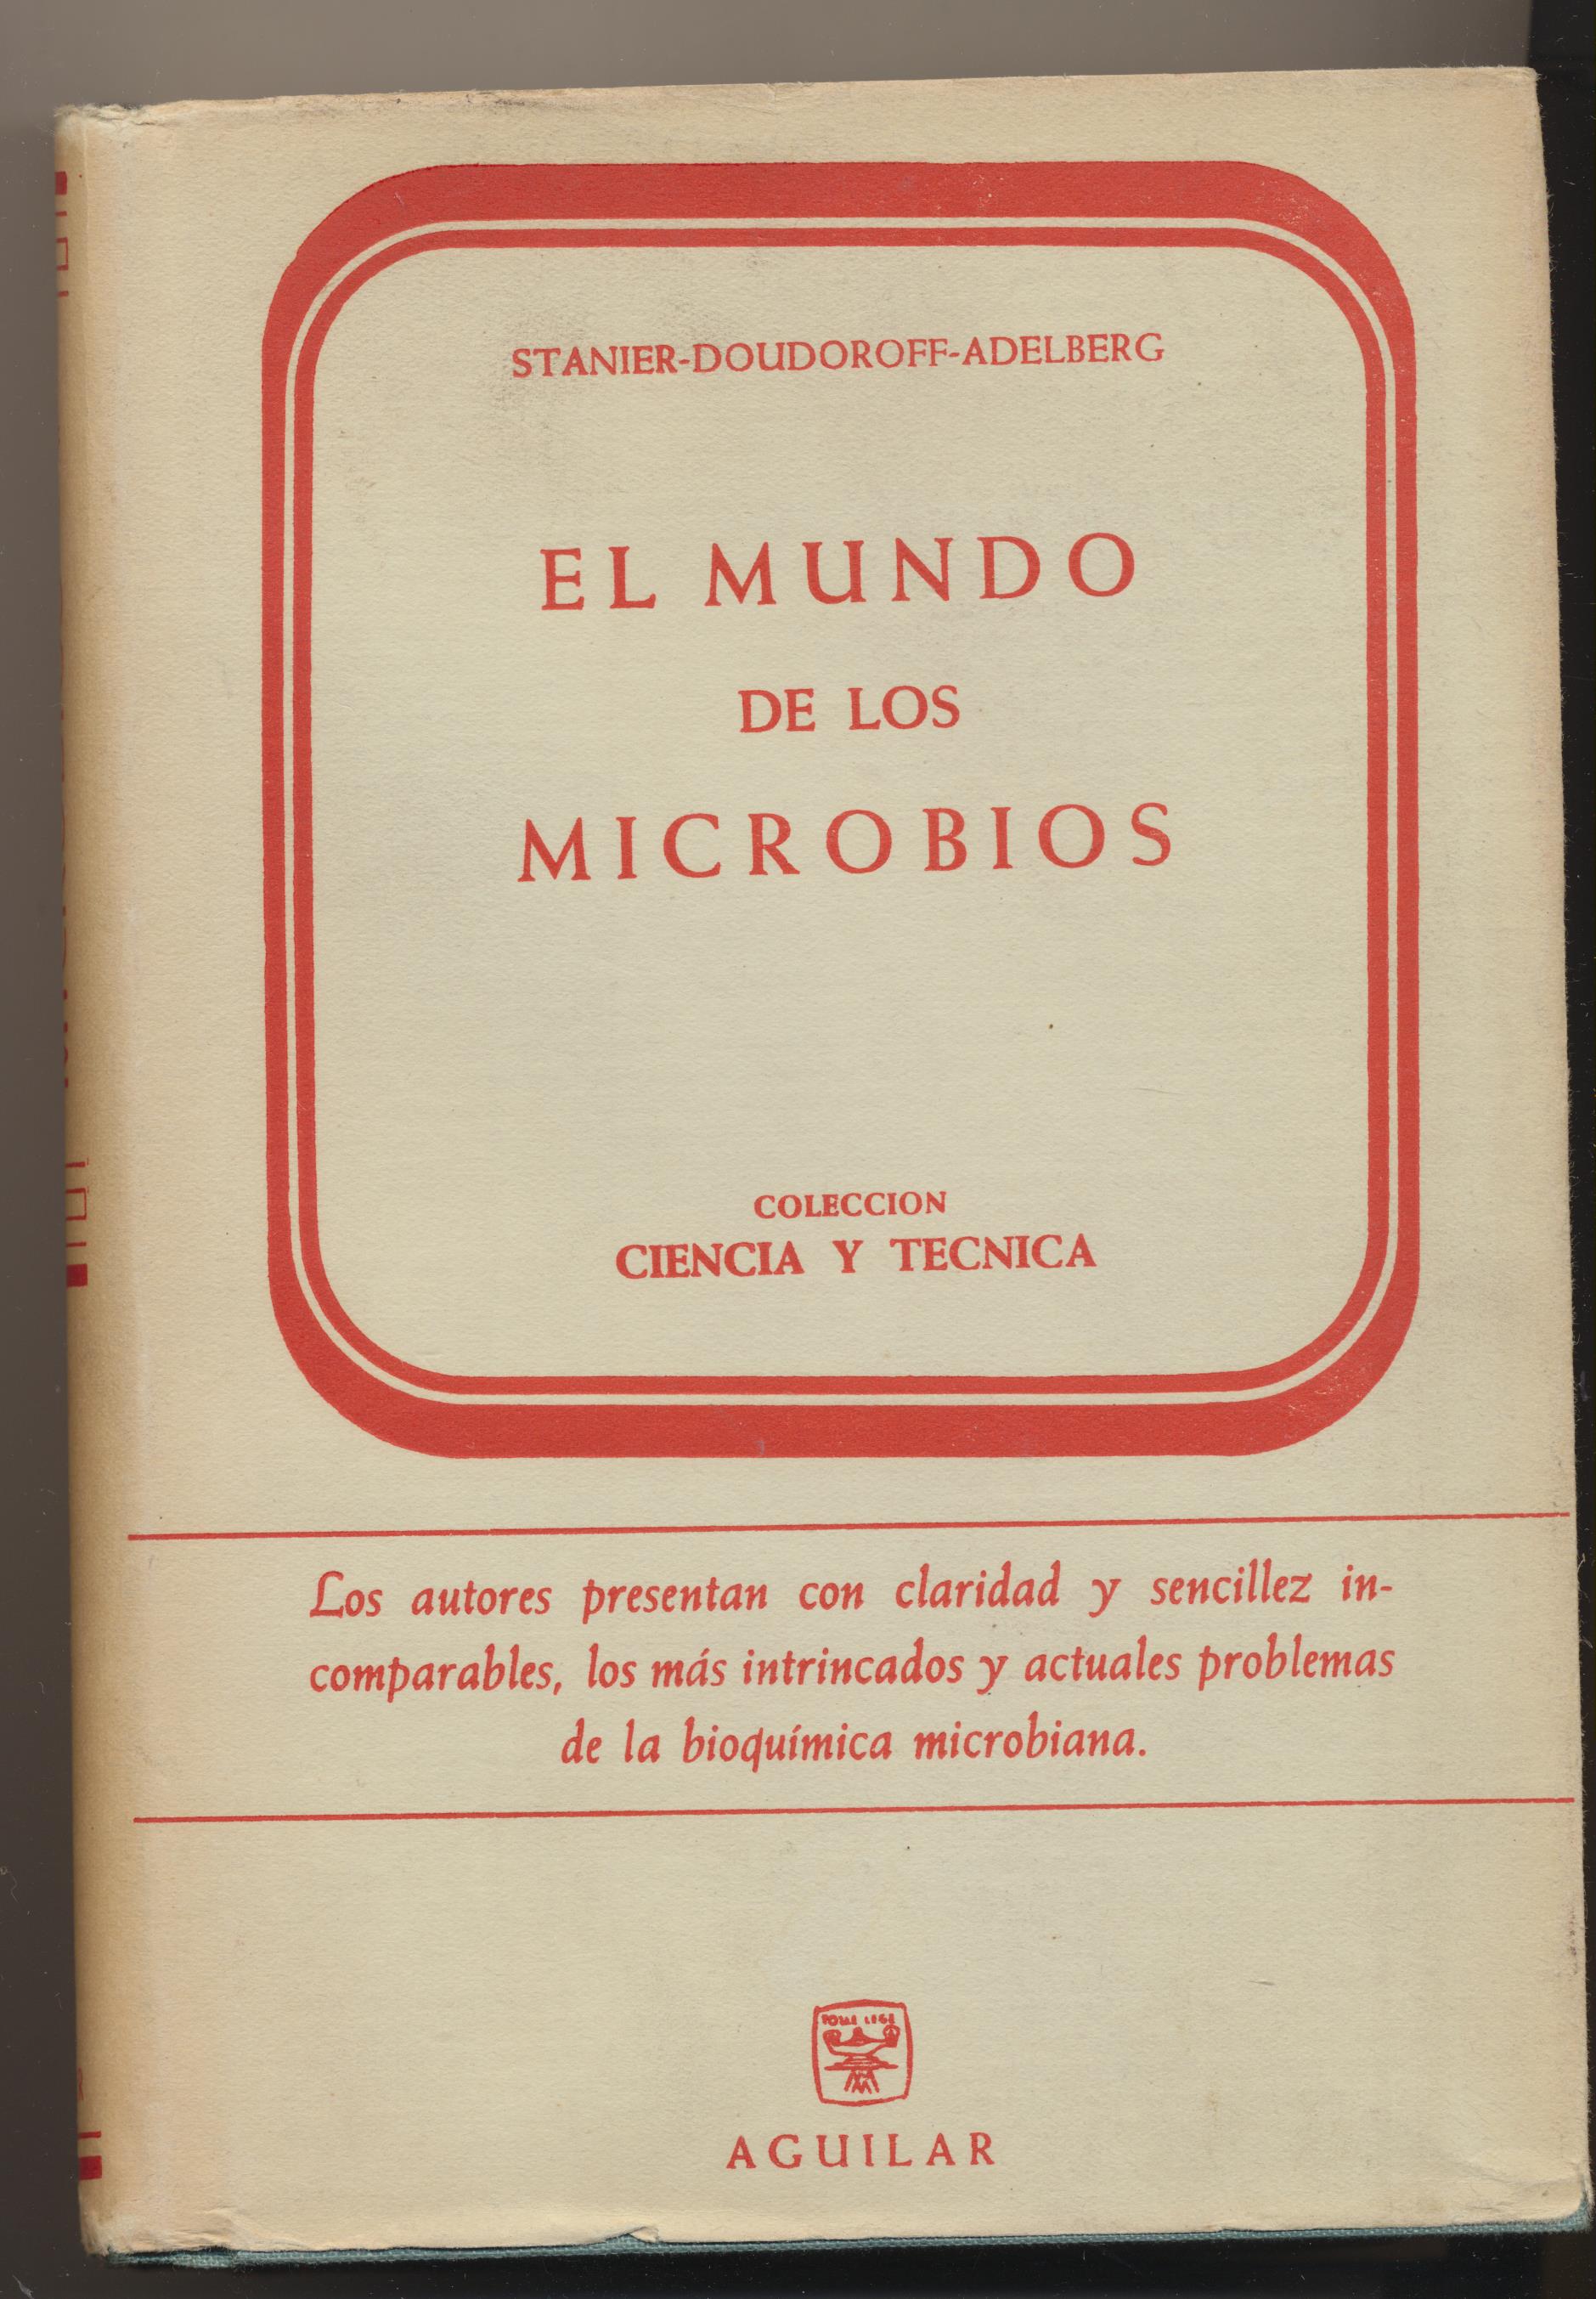 Stanier-Doudoroff-Adelberg. El Mundo de los Microbios. Aguilar 1965